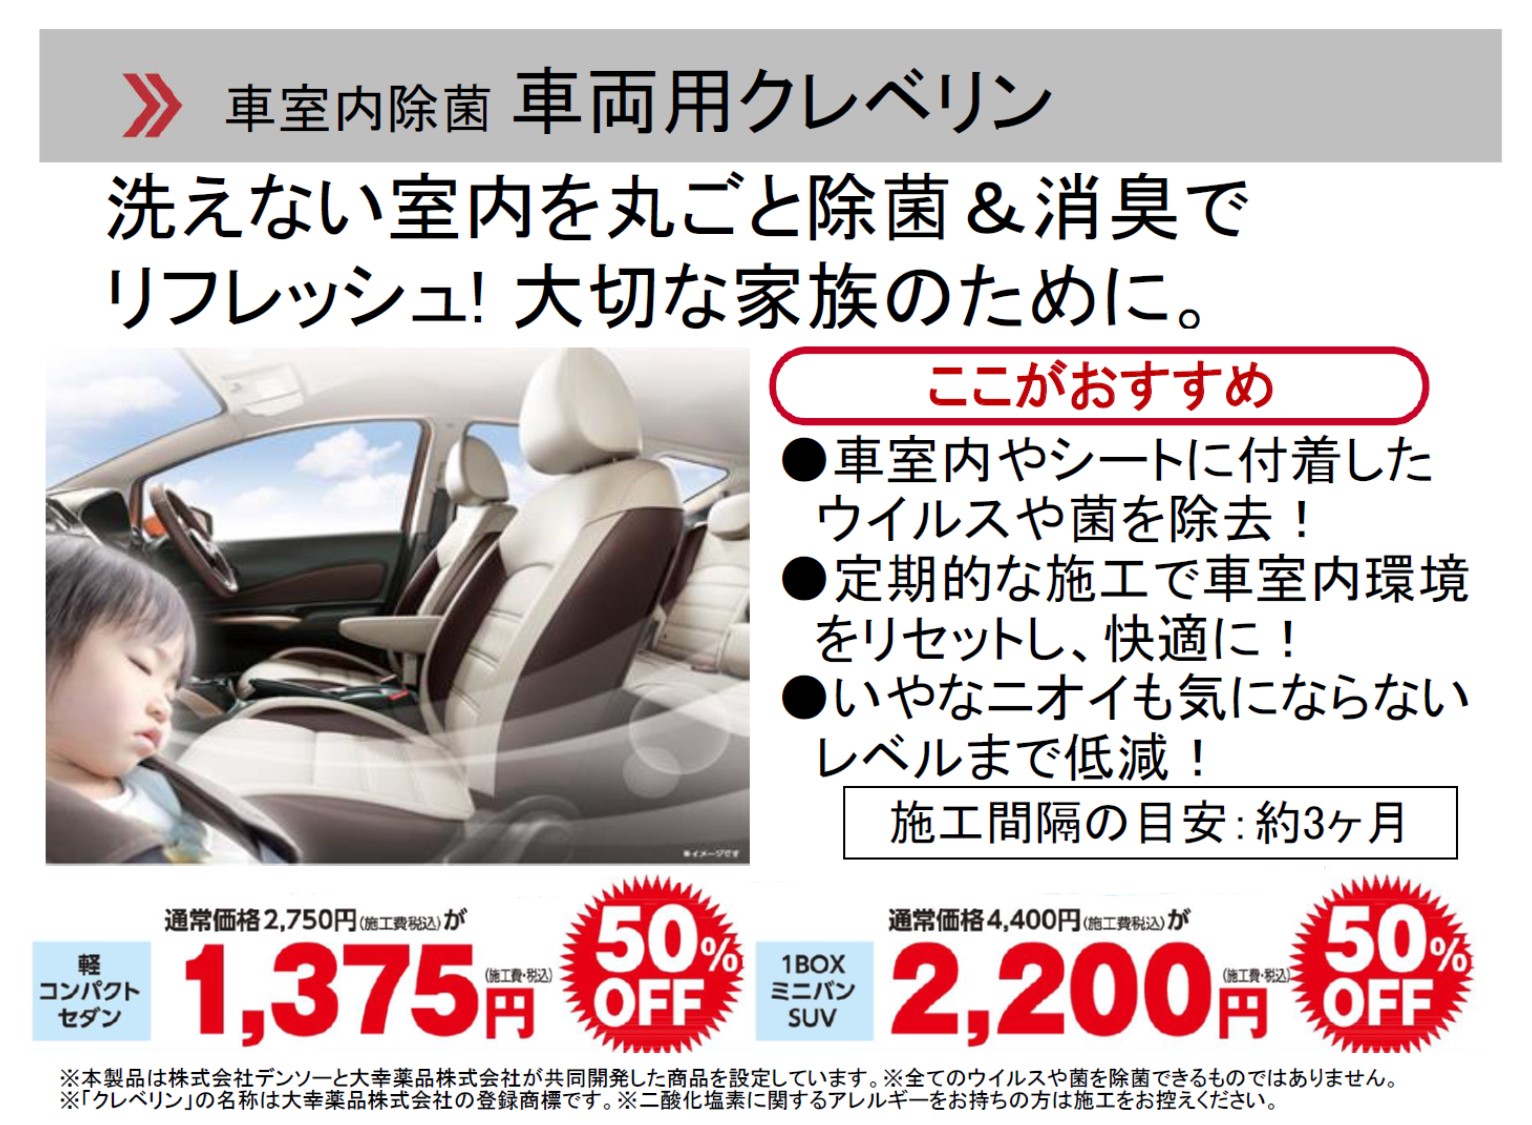 琉球日産自動車株式会社 アフターサービスオススメ商品